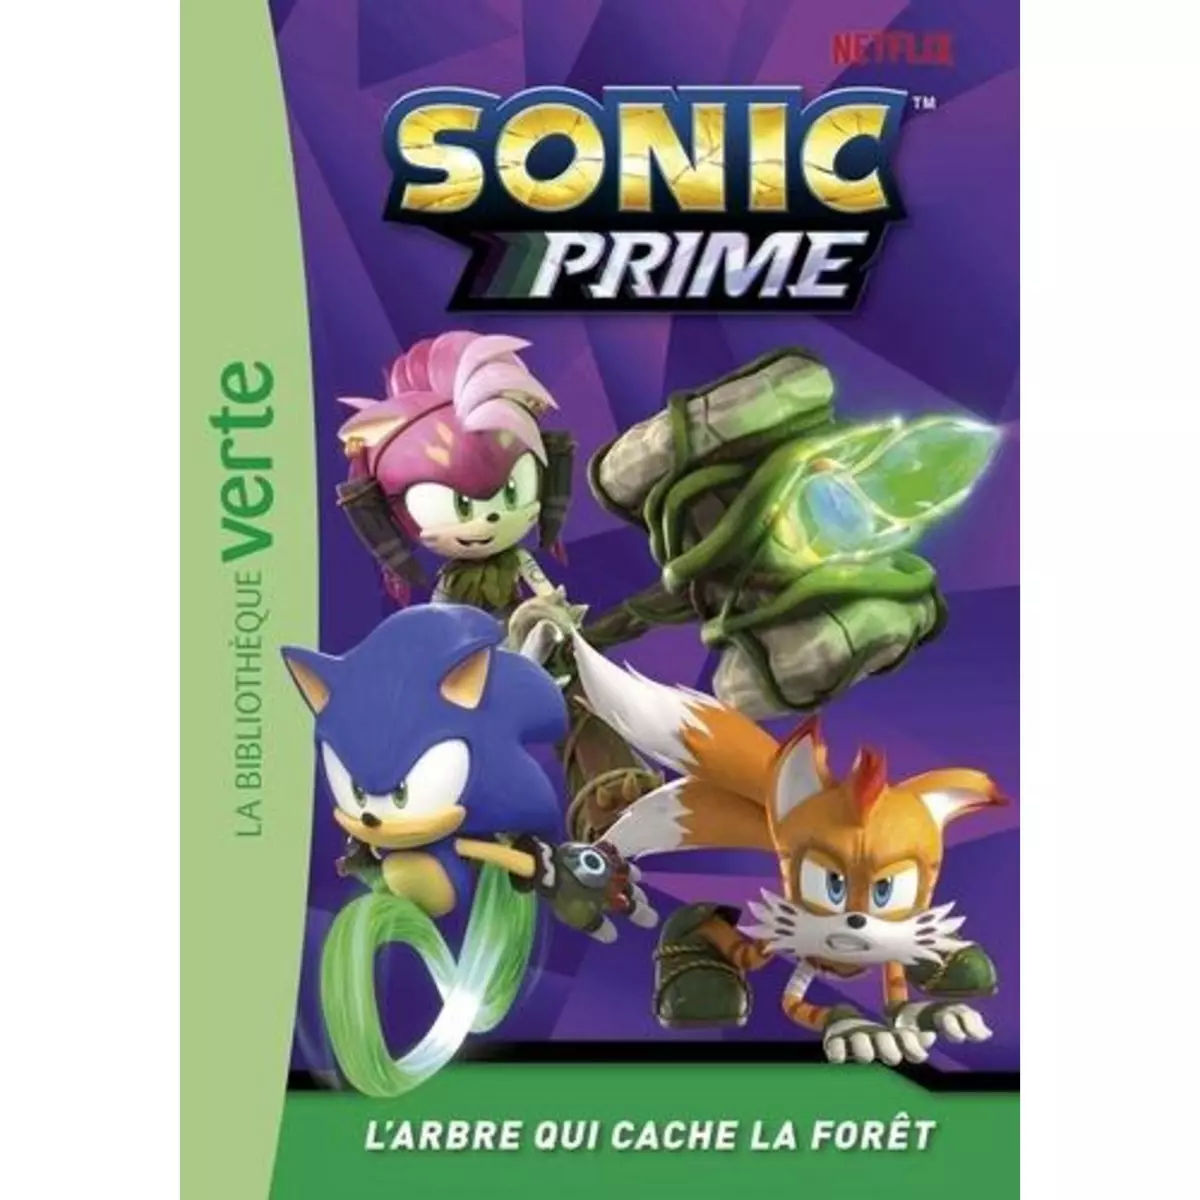  SONIC PRIME TOME 4 : L'ARBRE QUI CACHE LA FORET, Sega